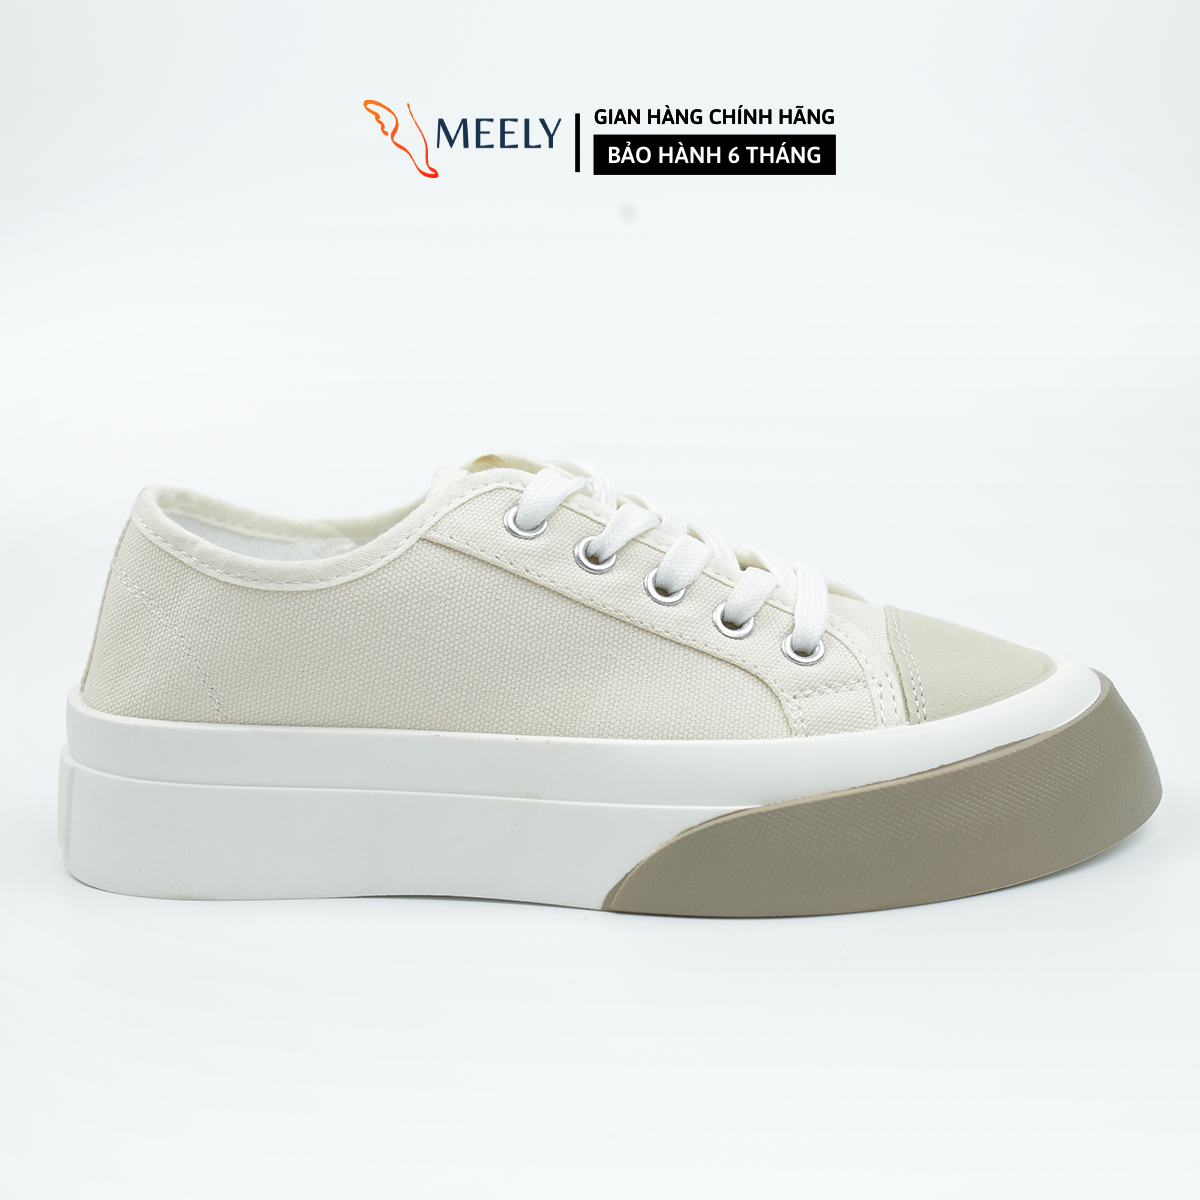 MEELY - Giày Thể Thao Nữ Sneaker Kiểu Dáng Hàn Quốc Cá Tính BT125